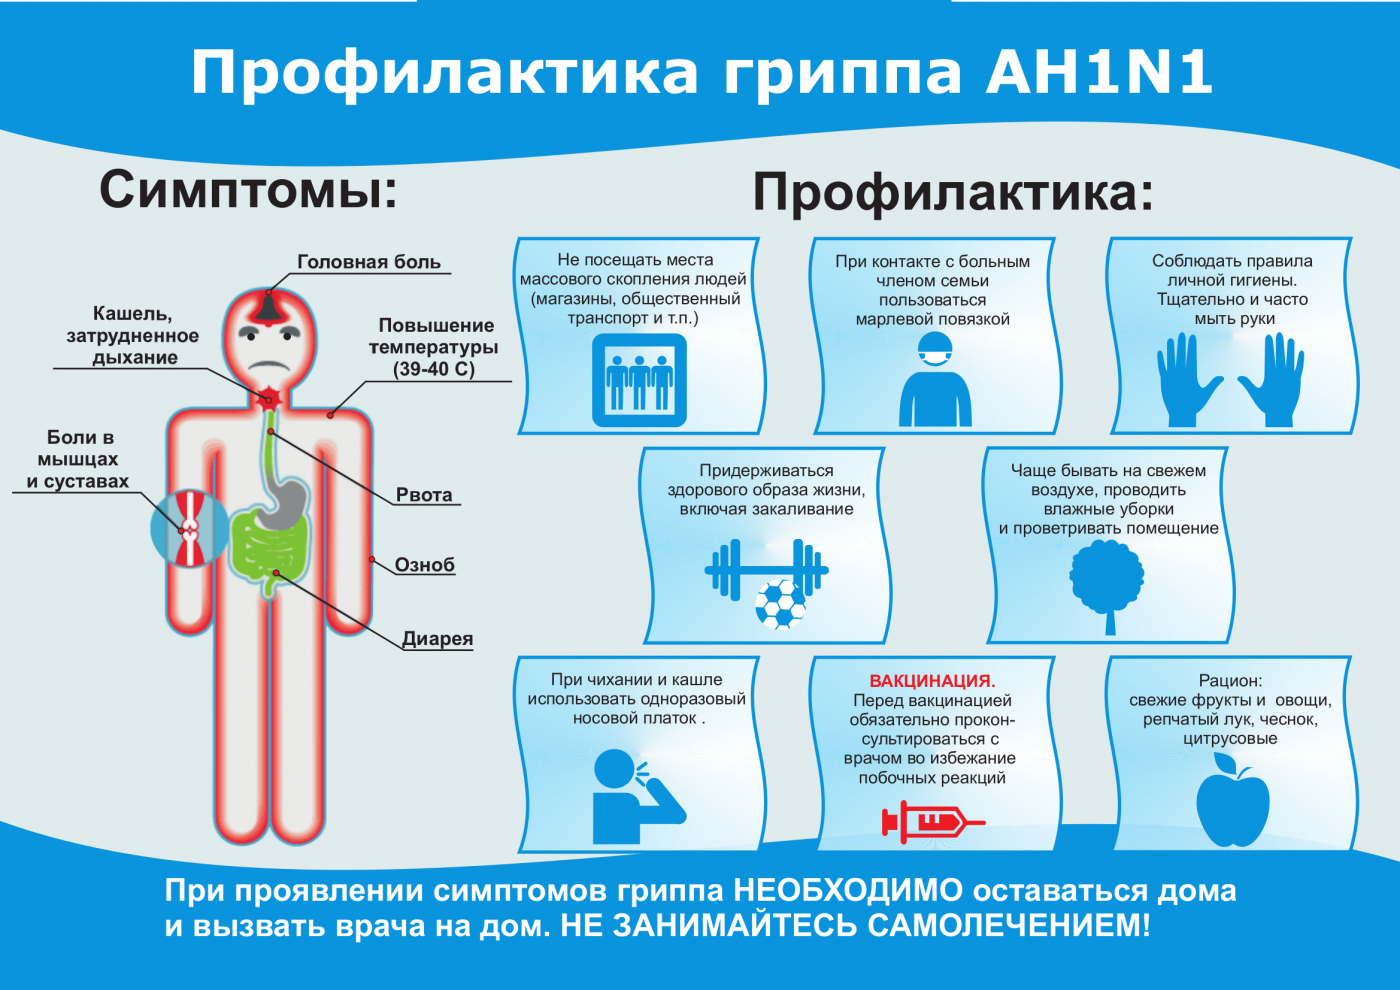 Грипп А (H1N1): клиника и профилактика